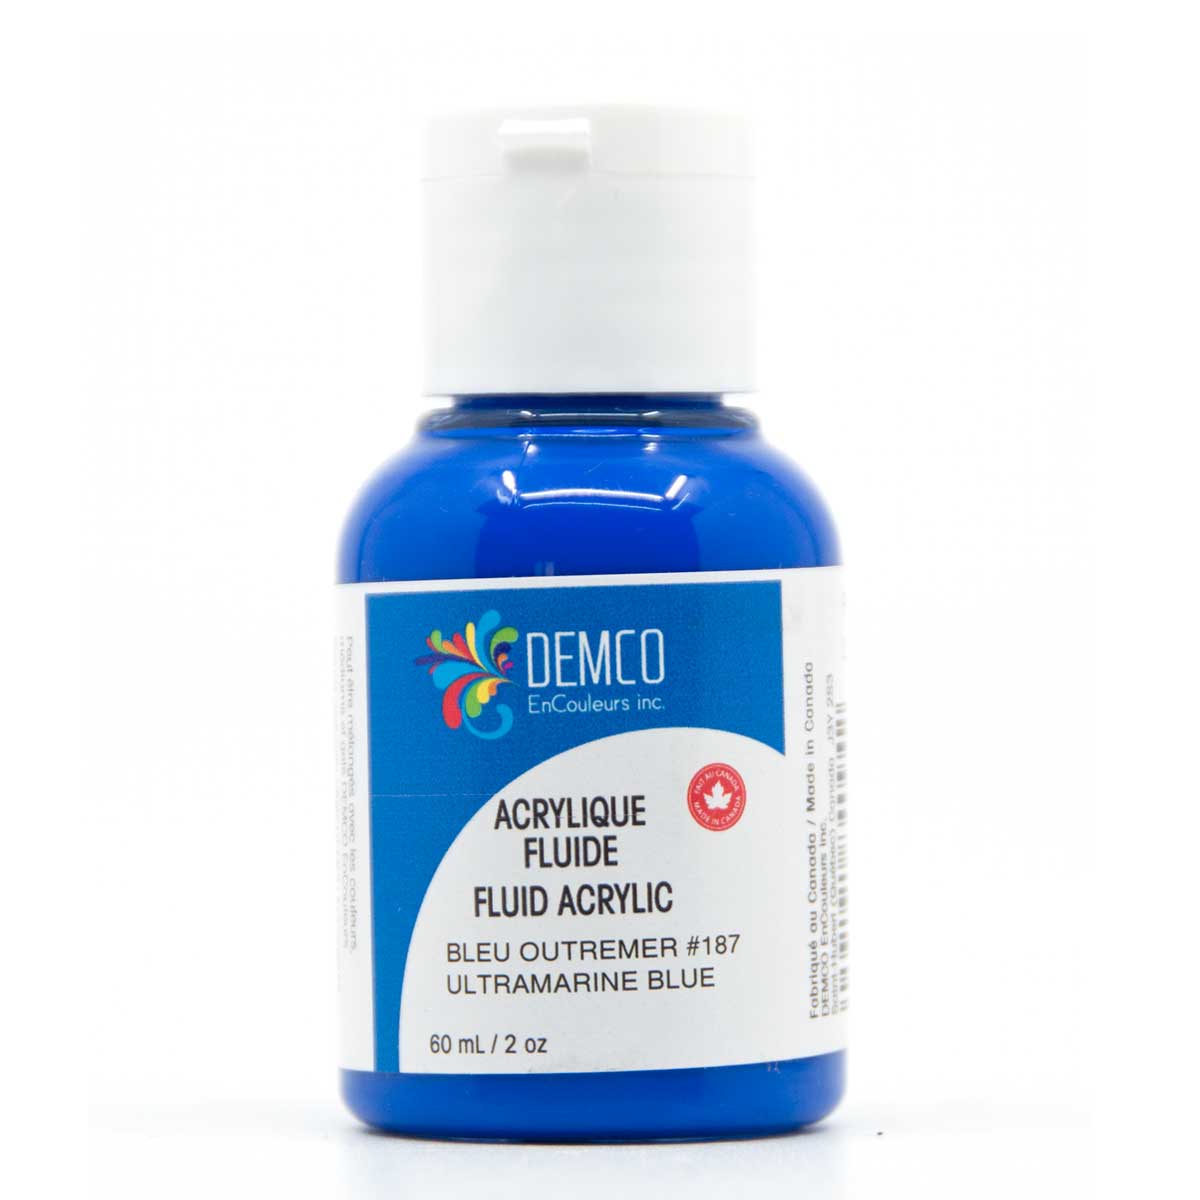 Demco Fluid Acrylic Paint - Ultramarine Blue 60 ml